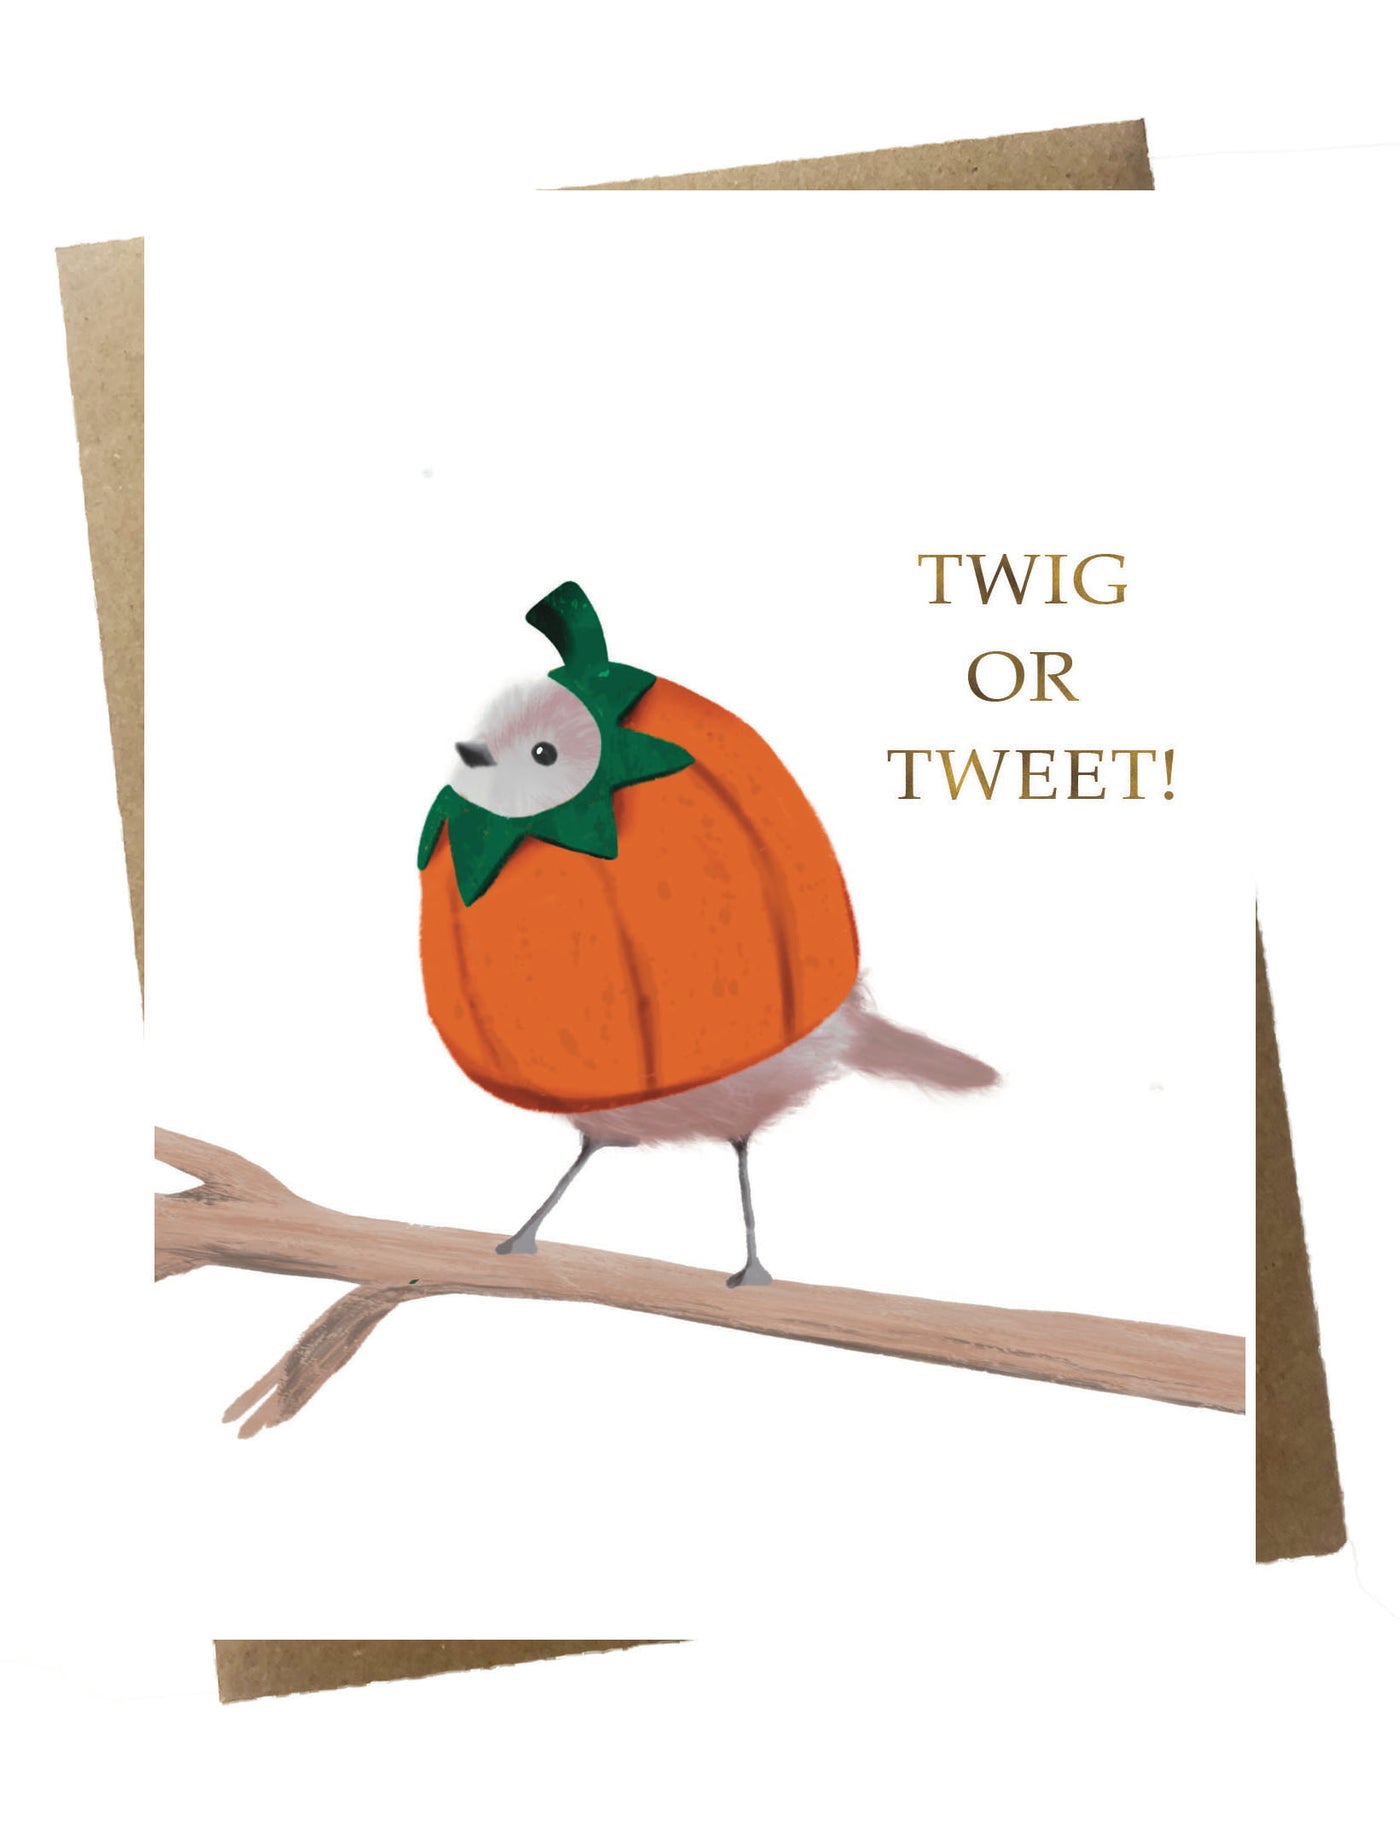 Twig or Tweet!